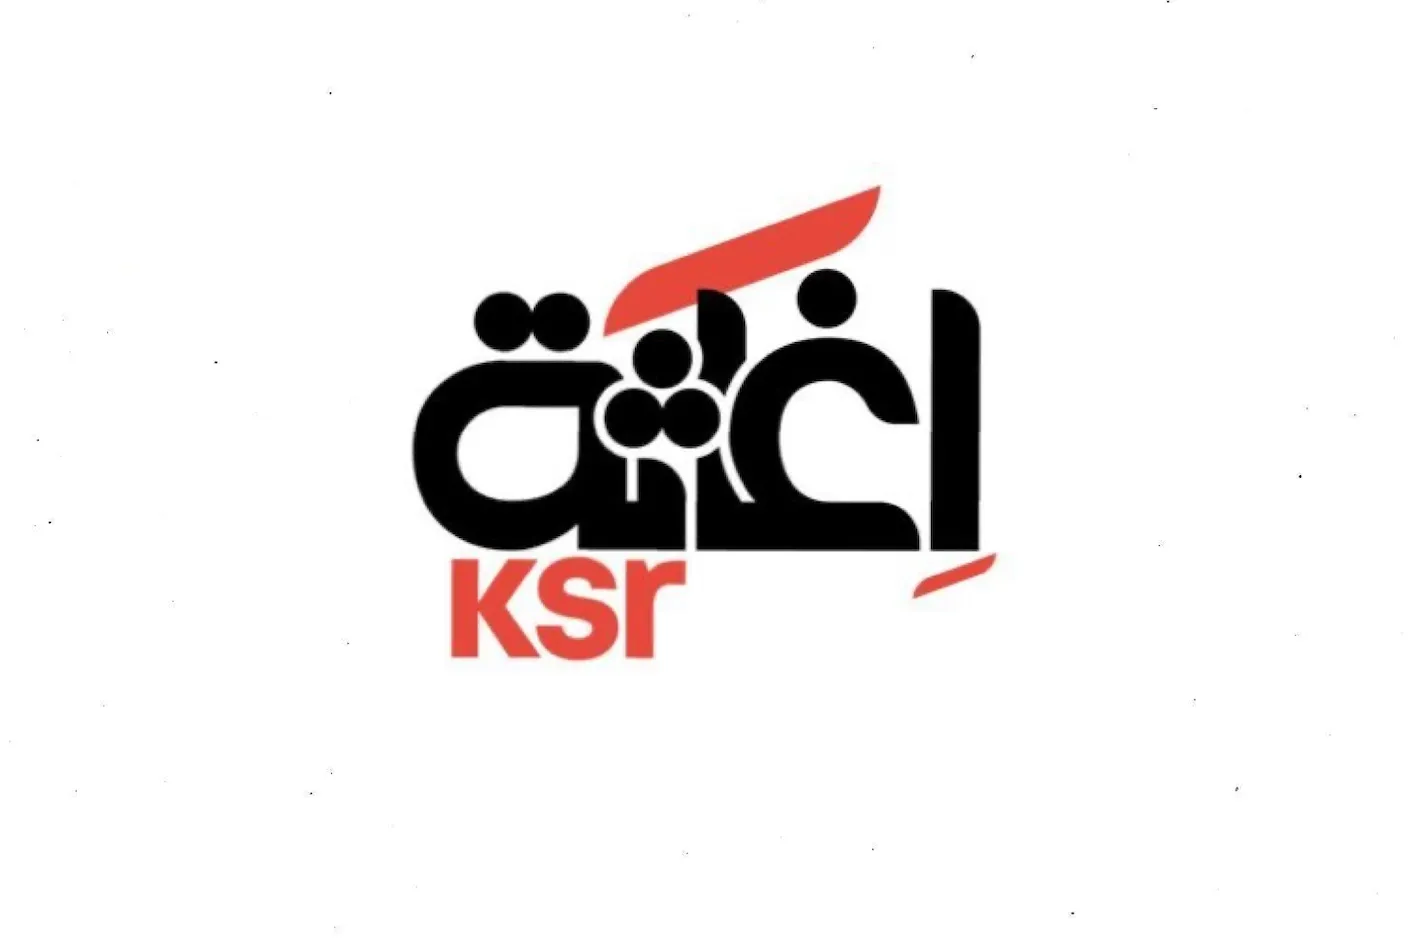 الجمعية الكويتية للإغاثة